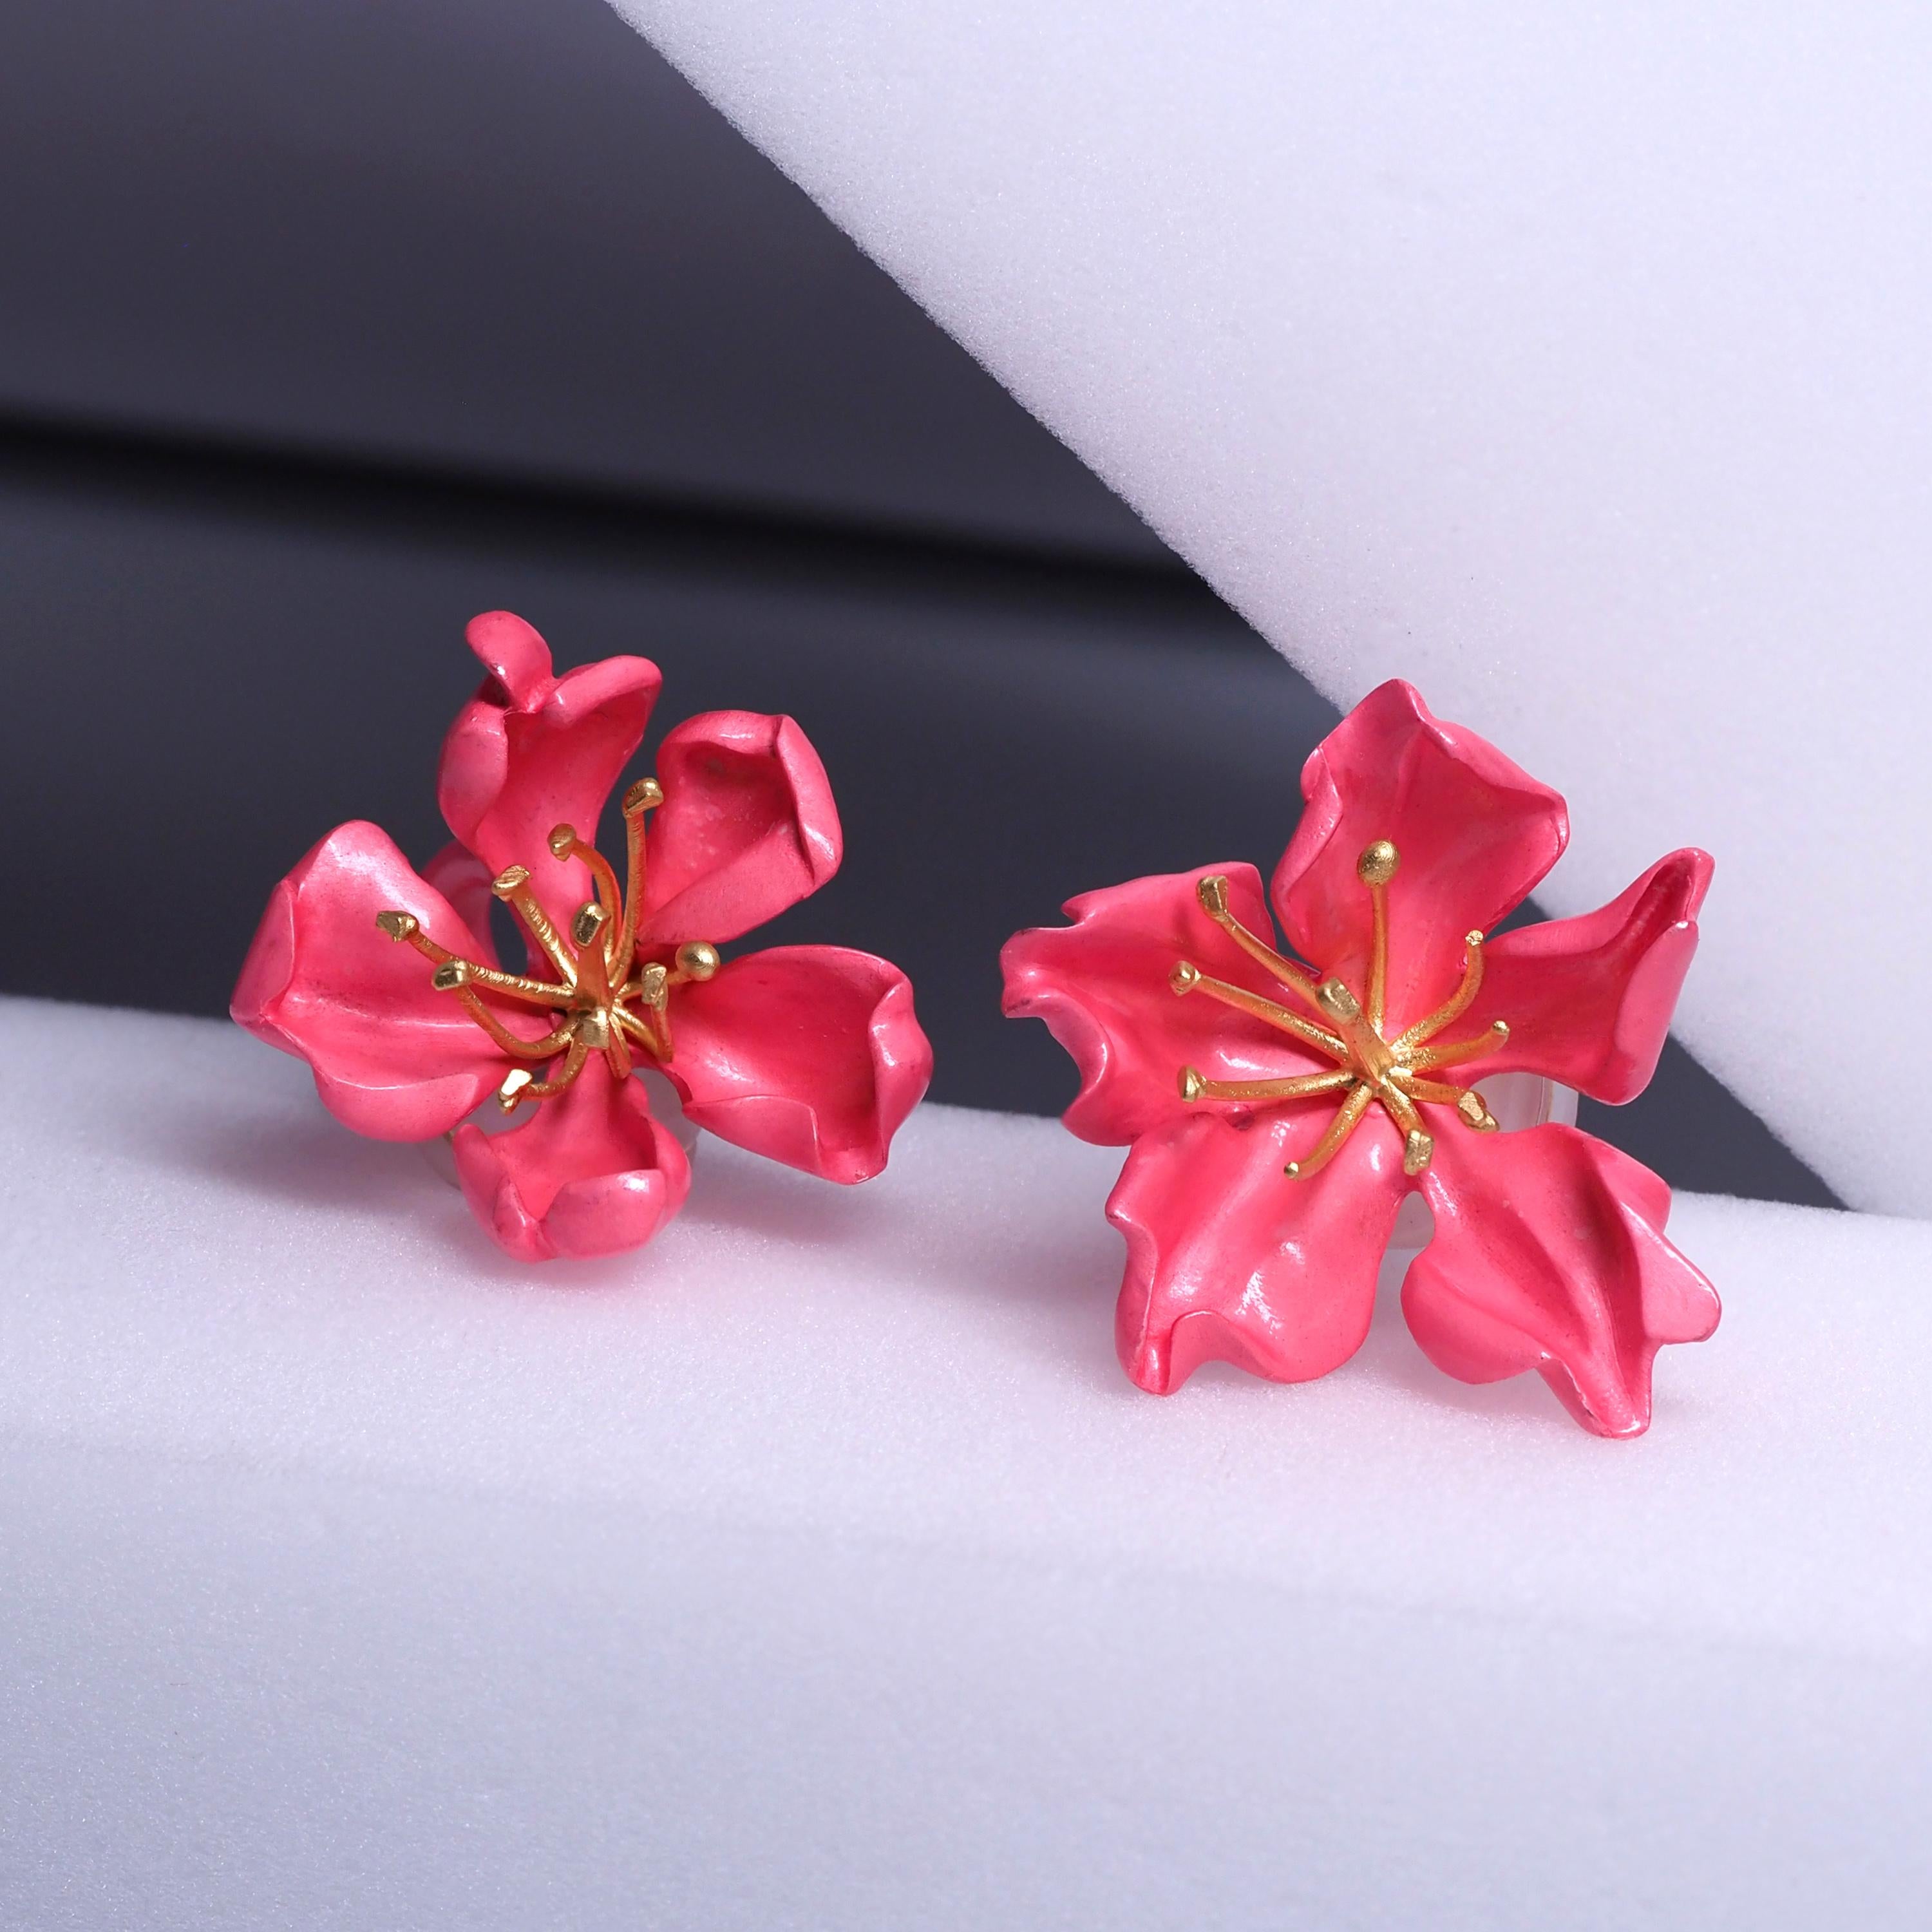 Ohrringe von Joel Arthur Rosenthal alias JAR Paris

Als Mandelblütenpaar gestaltet, bestehend aus modellierten, mit rosa Emaille überzogenen Silberblättern, die goldene Blütenstempel zentrieren, signiert JAR Paris und nummeriert, mit französischen